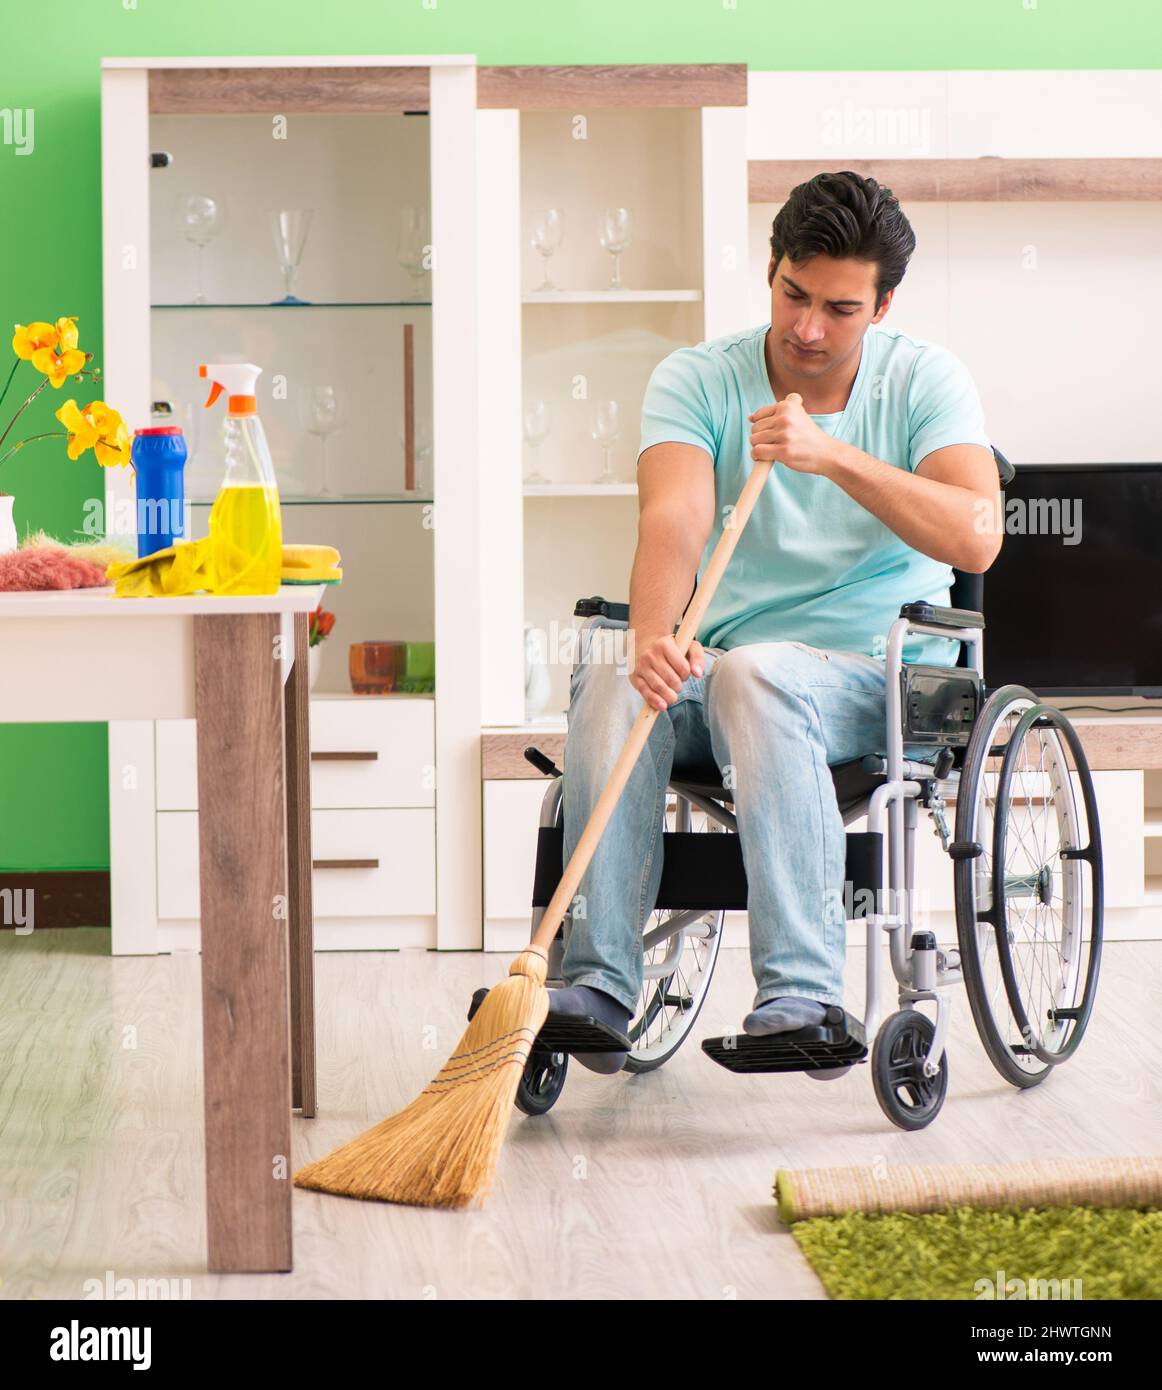 L'homme handicapé sur fauteuil roulant chambre de nettoyage Photo Stock -  Alamy